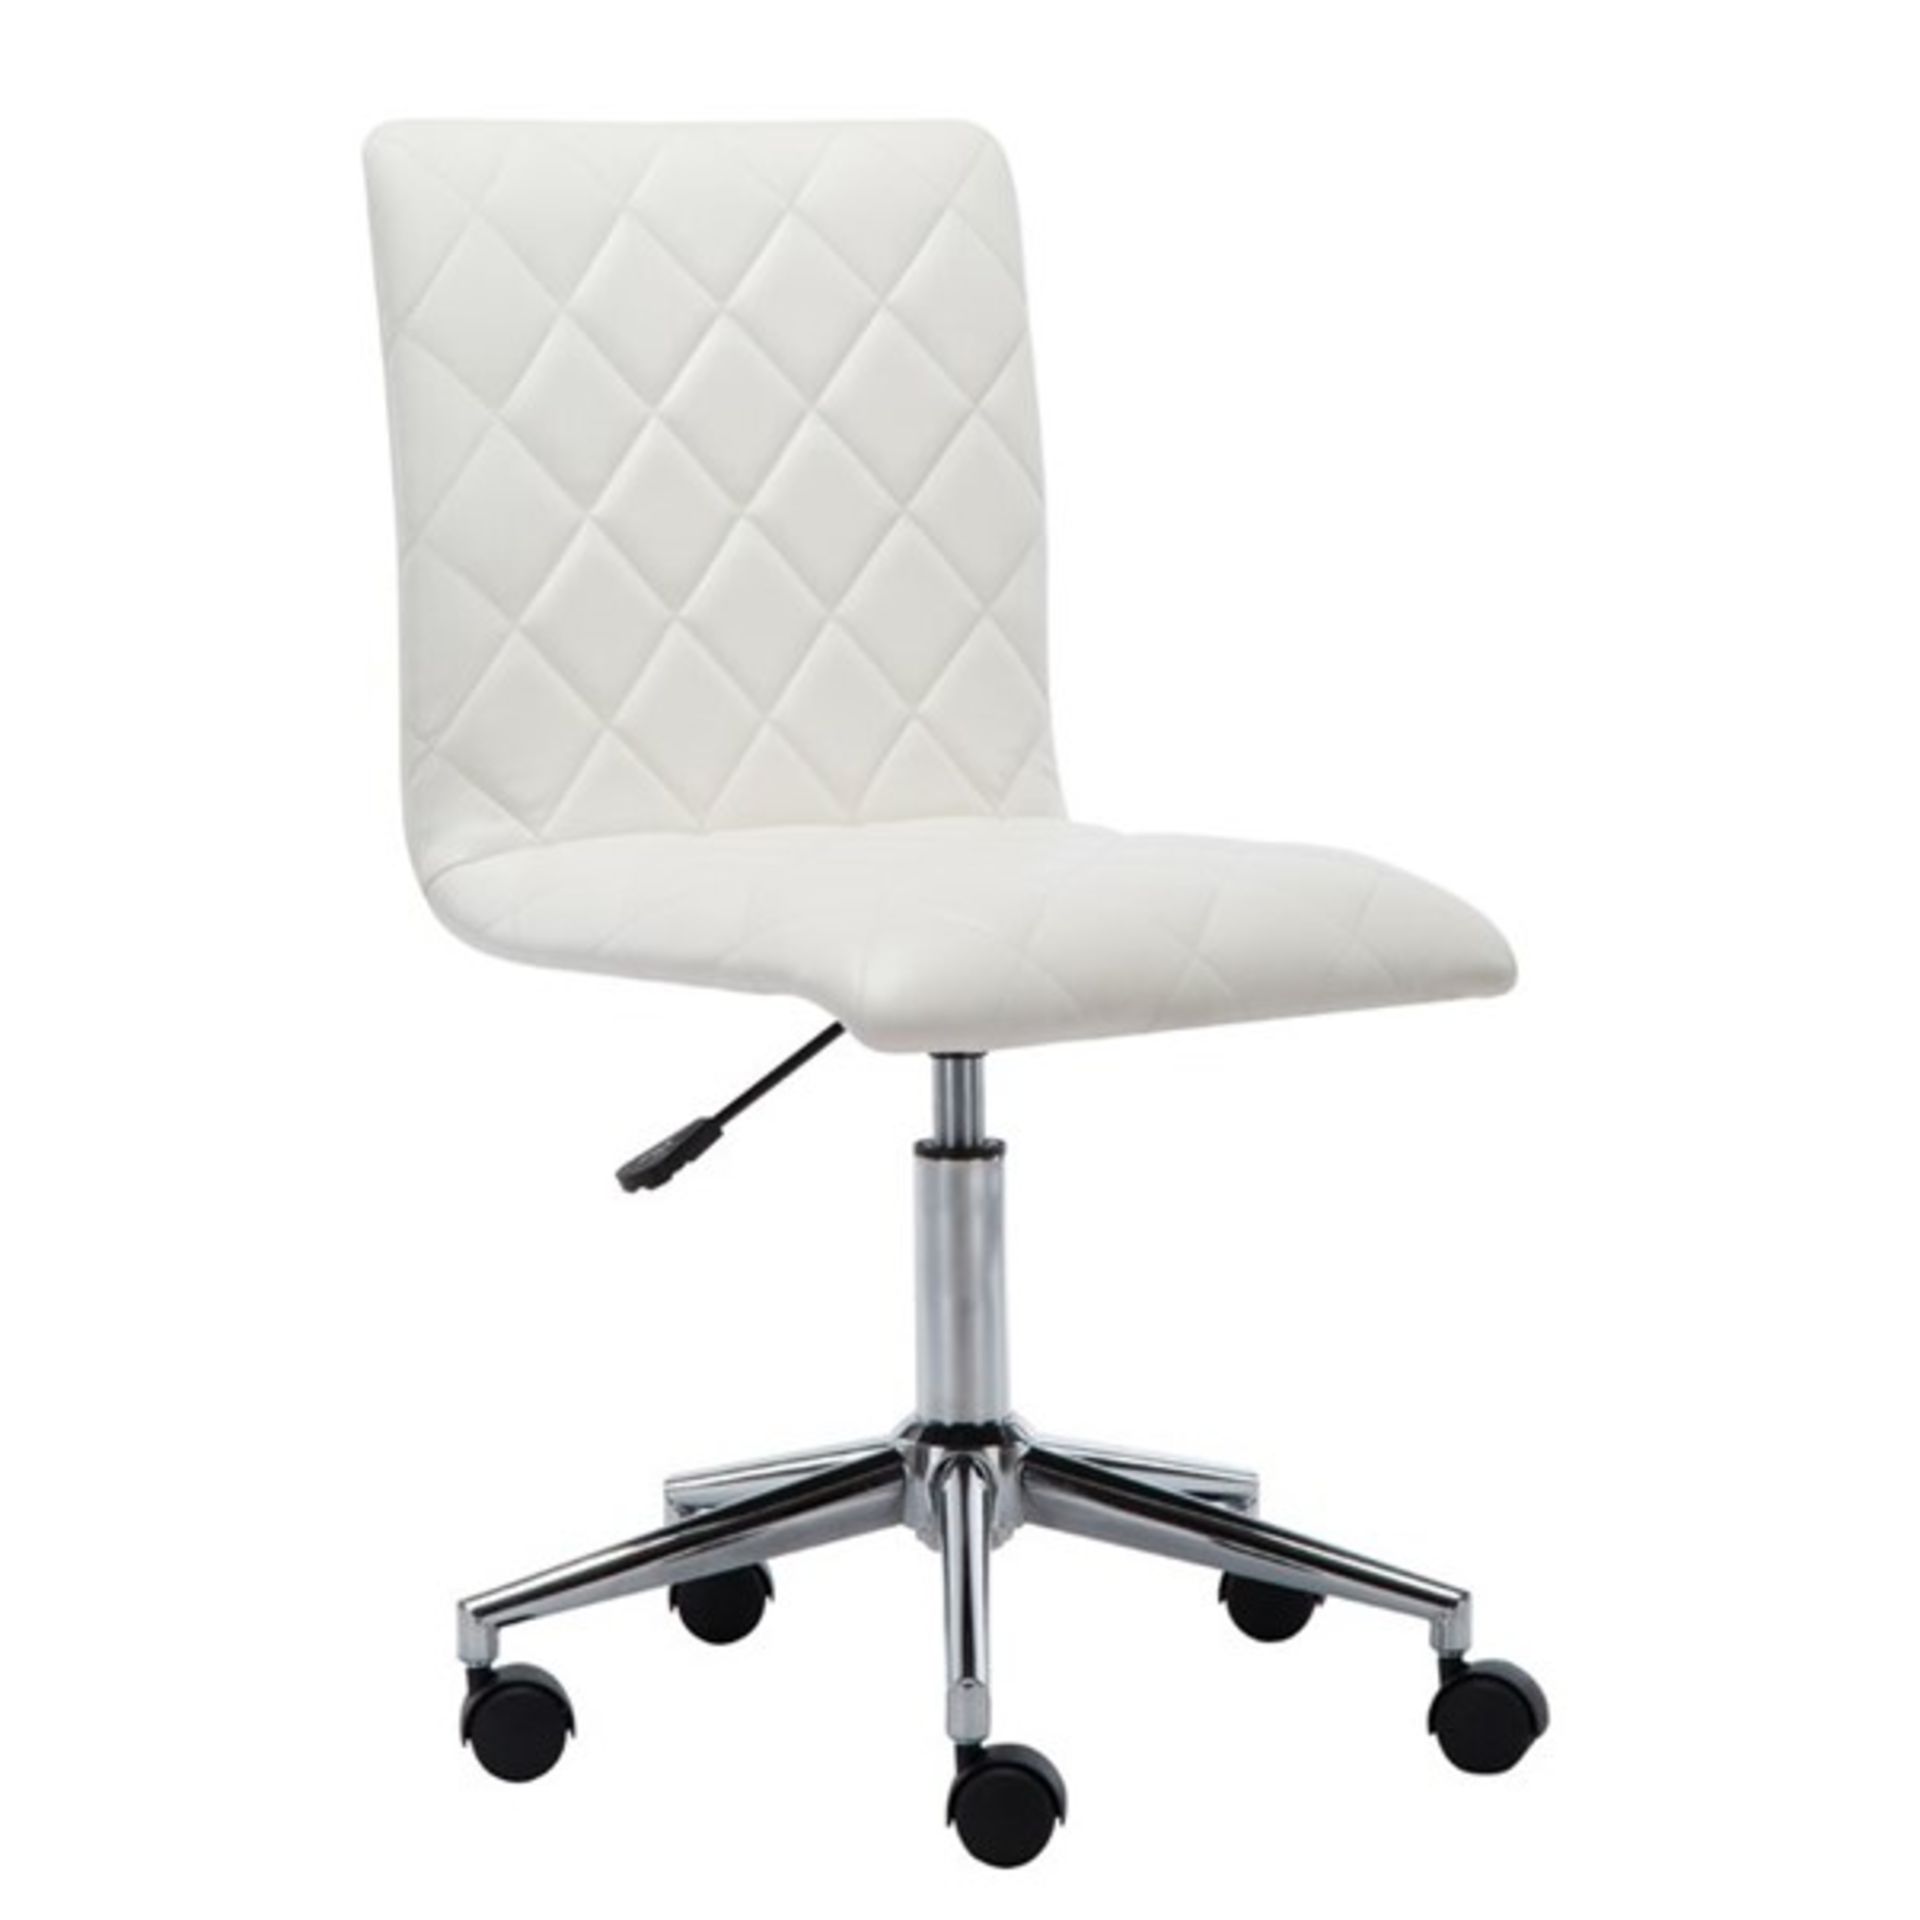 RRP £101.99 - Havard Desk Chair - 41.91cm W x 54.61cm D - Image 3 of 3